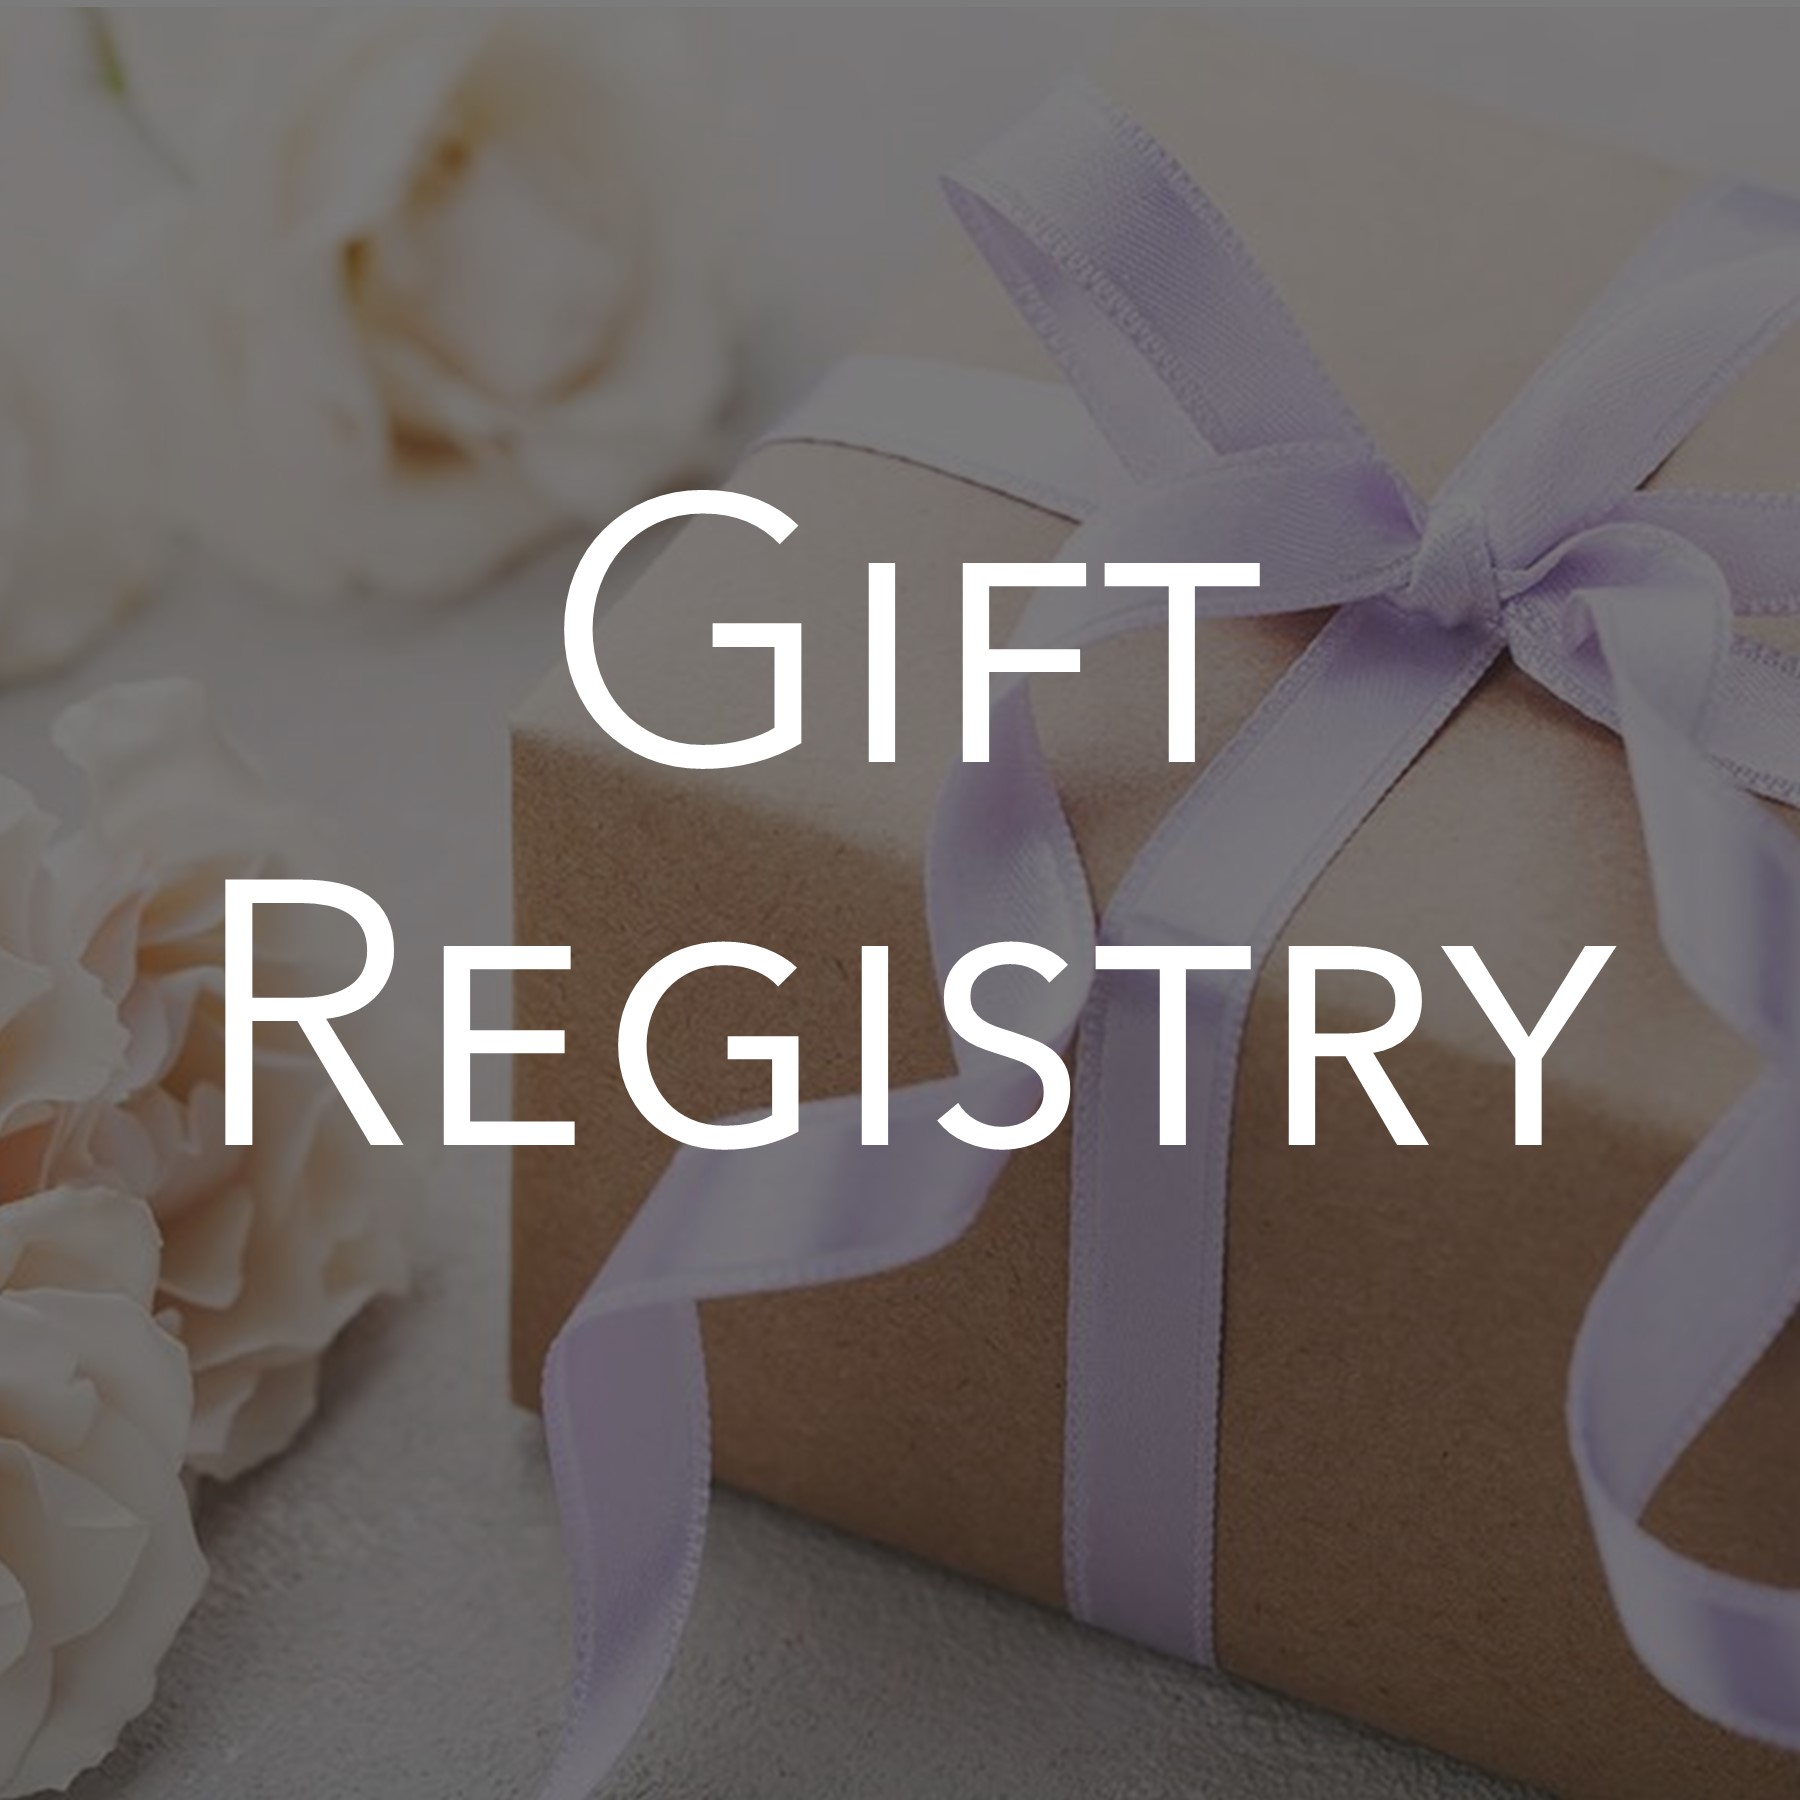 Gift Registry